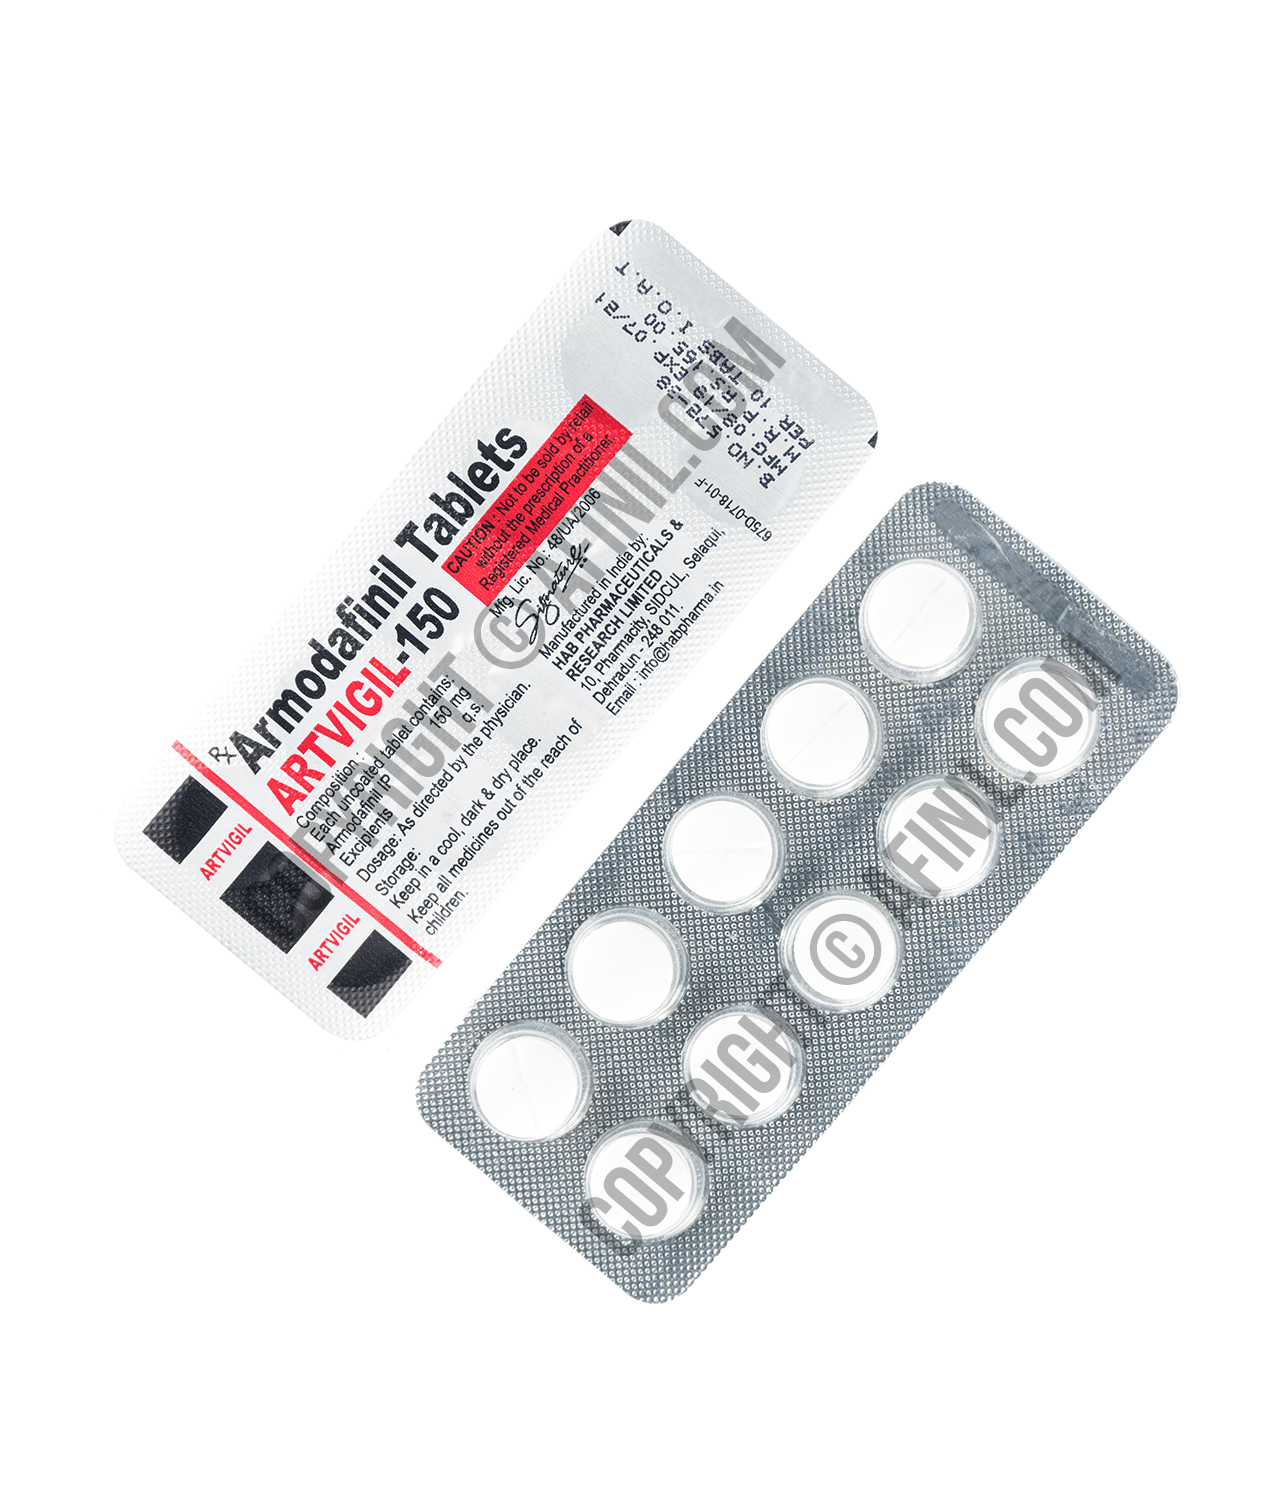 Confezione 8 pastiglie cialis 20 mg prezzo